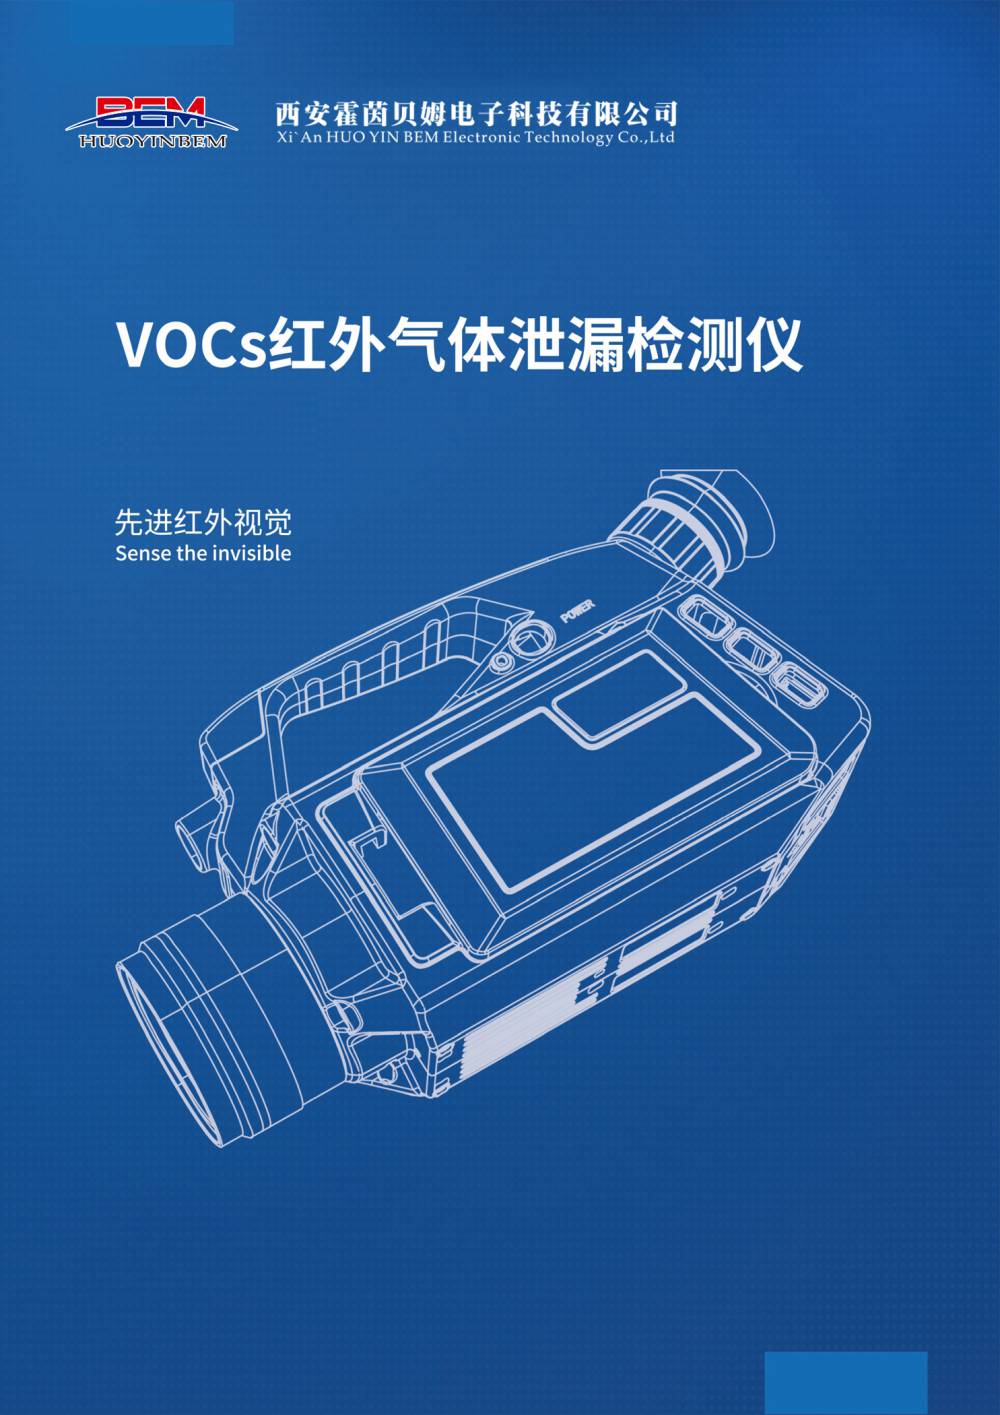 新款FG100红外热成像气体泄漏检测仪 VOCs便携式检漏仪